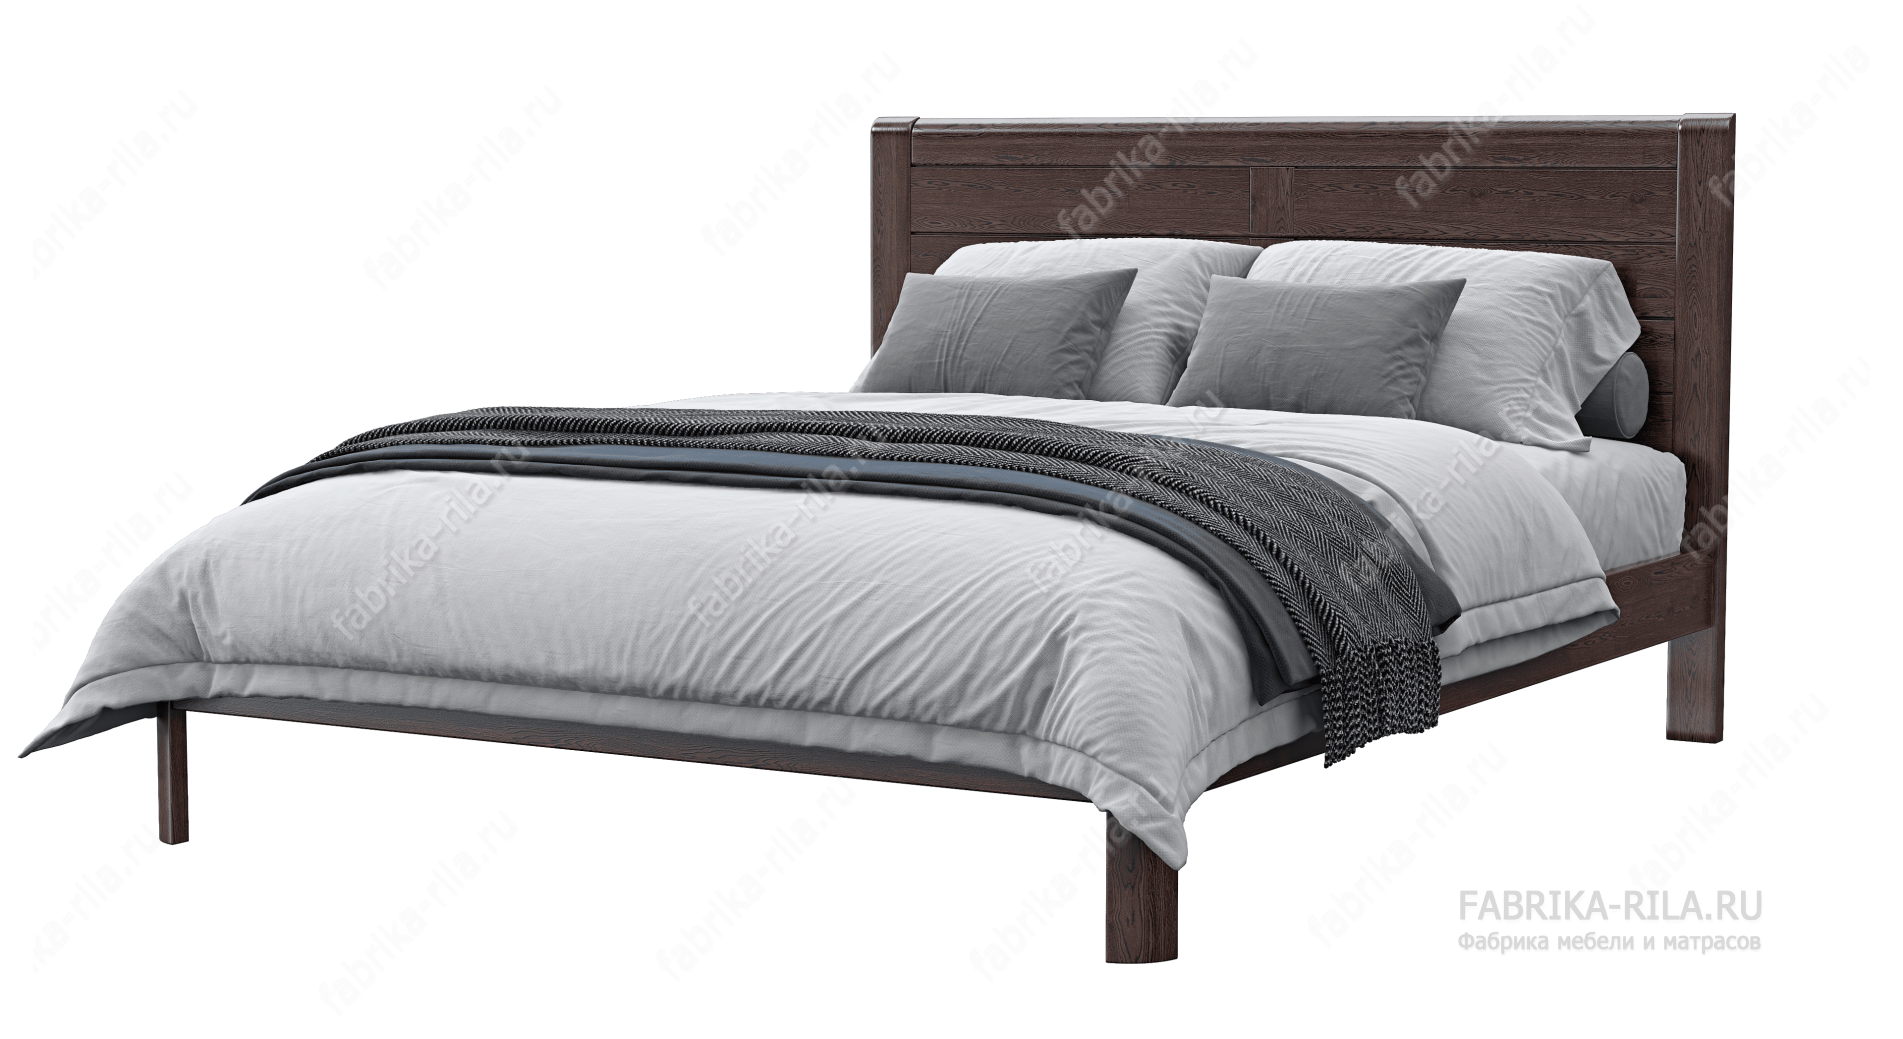 Кровать Riviera — 180x190 см. из сосны